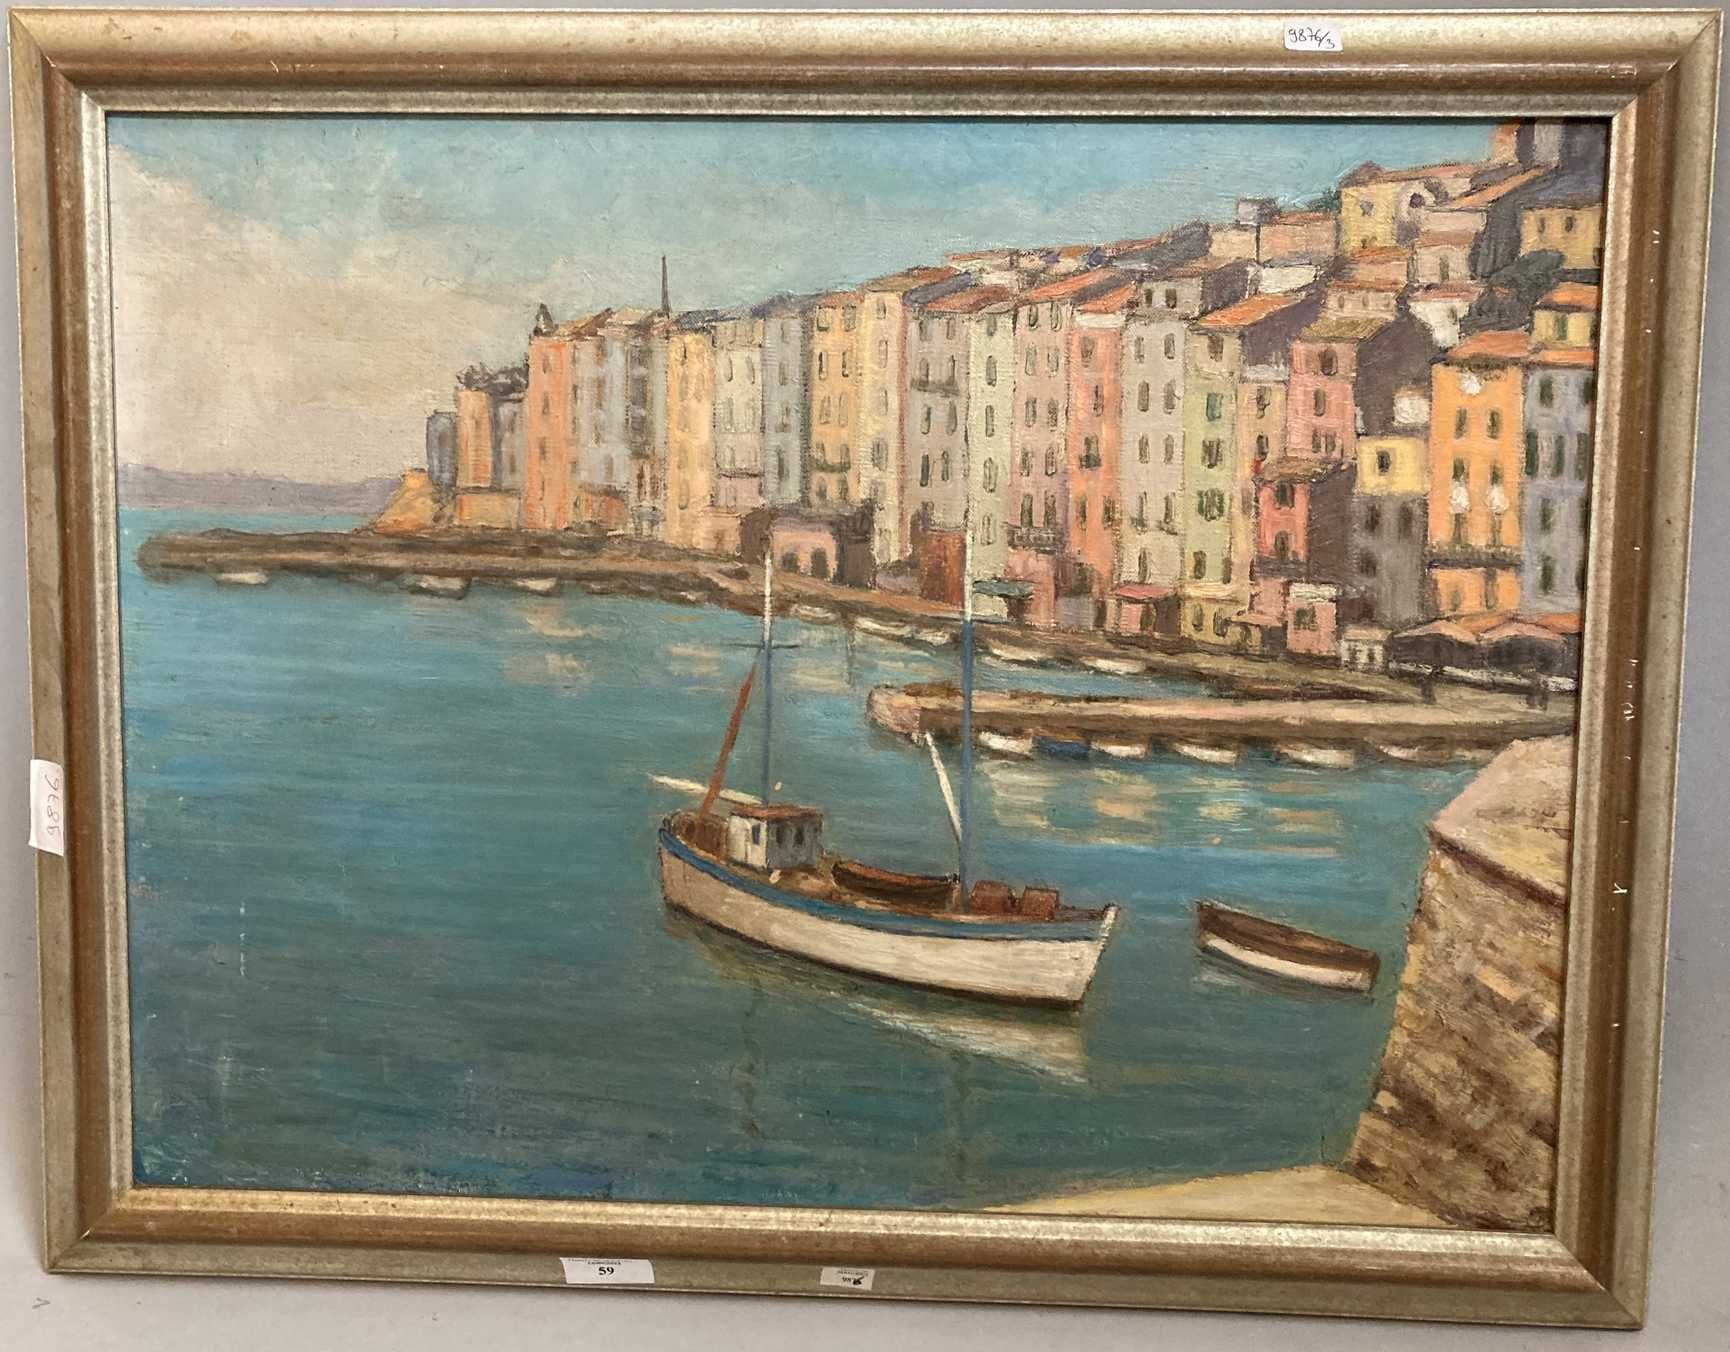 Null Porto vecchio现代学校

港口景观

布面油画，背面有题字 "GUINARD porto vecchio 1960"？

46 x 61 &hellip;